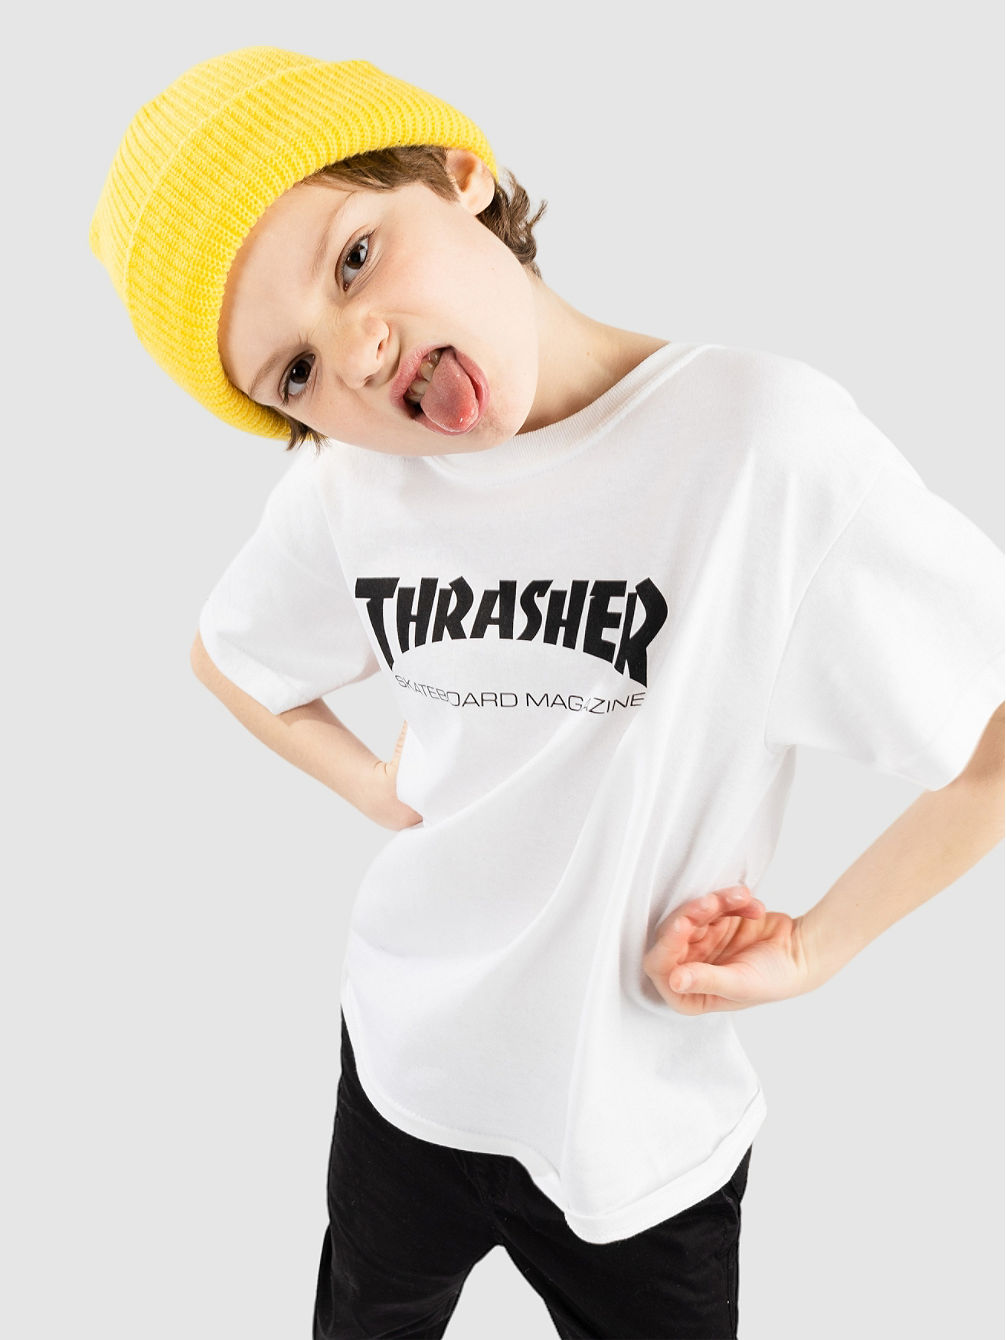 Skate Mag Kids T-Shirt